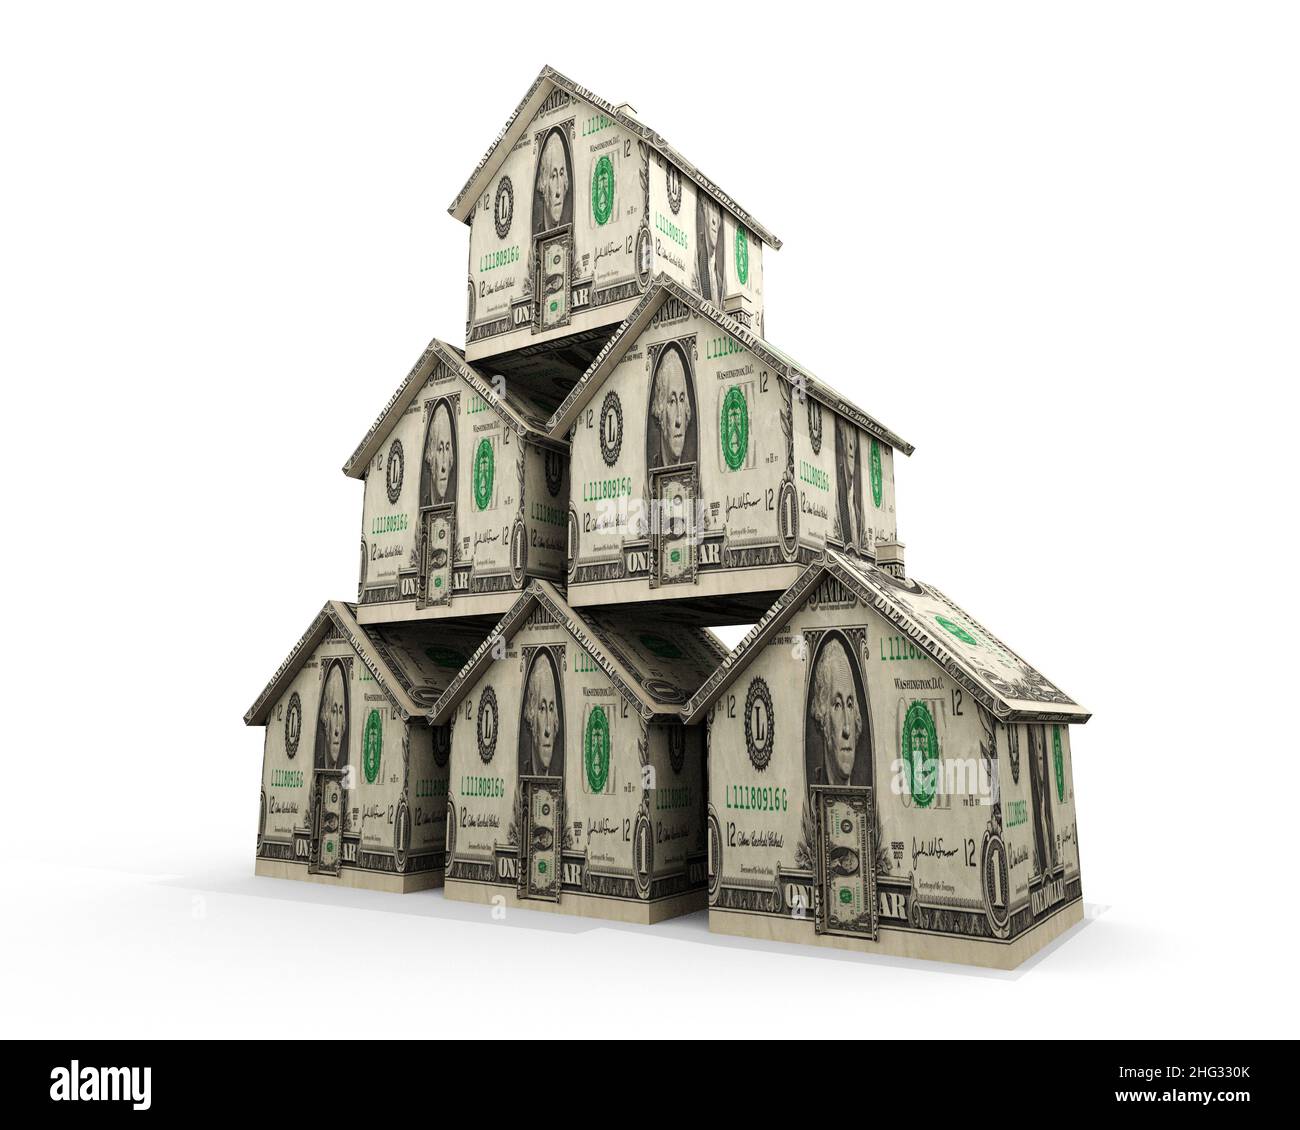 Multiple Hypotheken: Eine Illustration, die sich auf die finanzielle Belastung mehrerer Hypotheken oder den finanziellen Gewinn aus mehreren Immobilieninvestitionen bezieht. Stockfoto